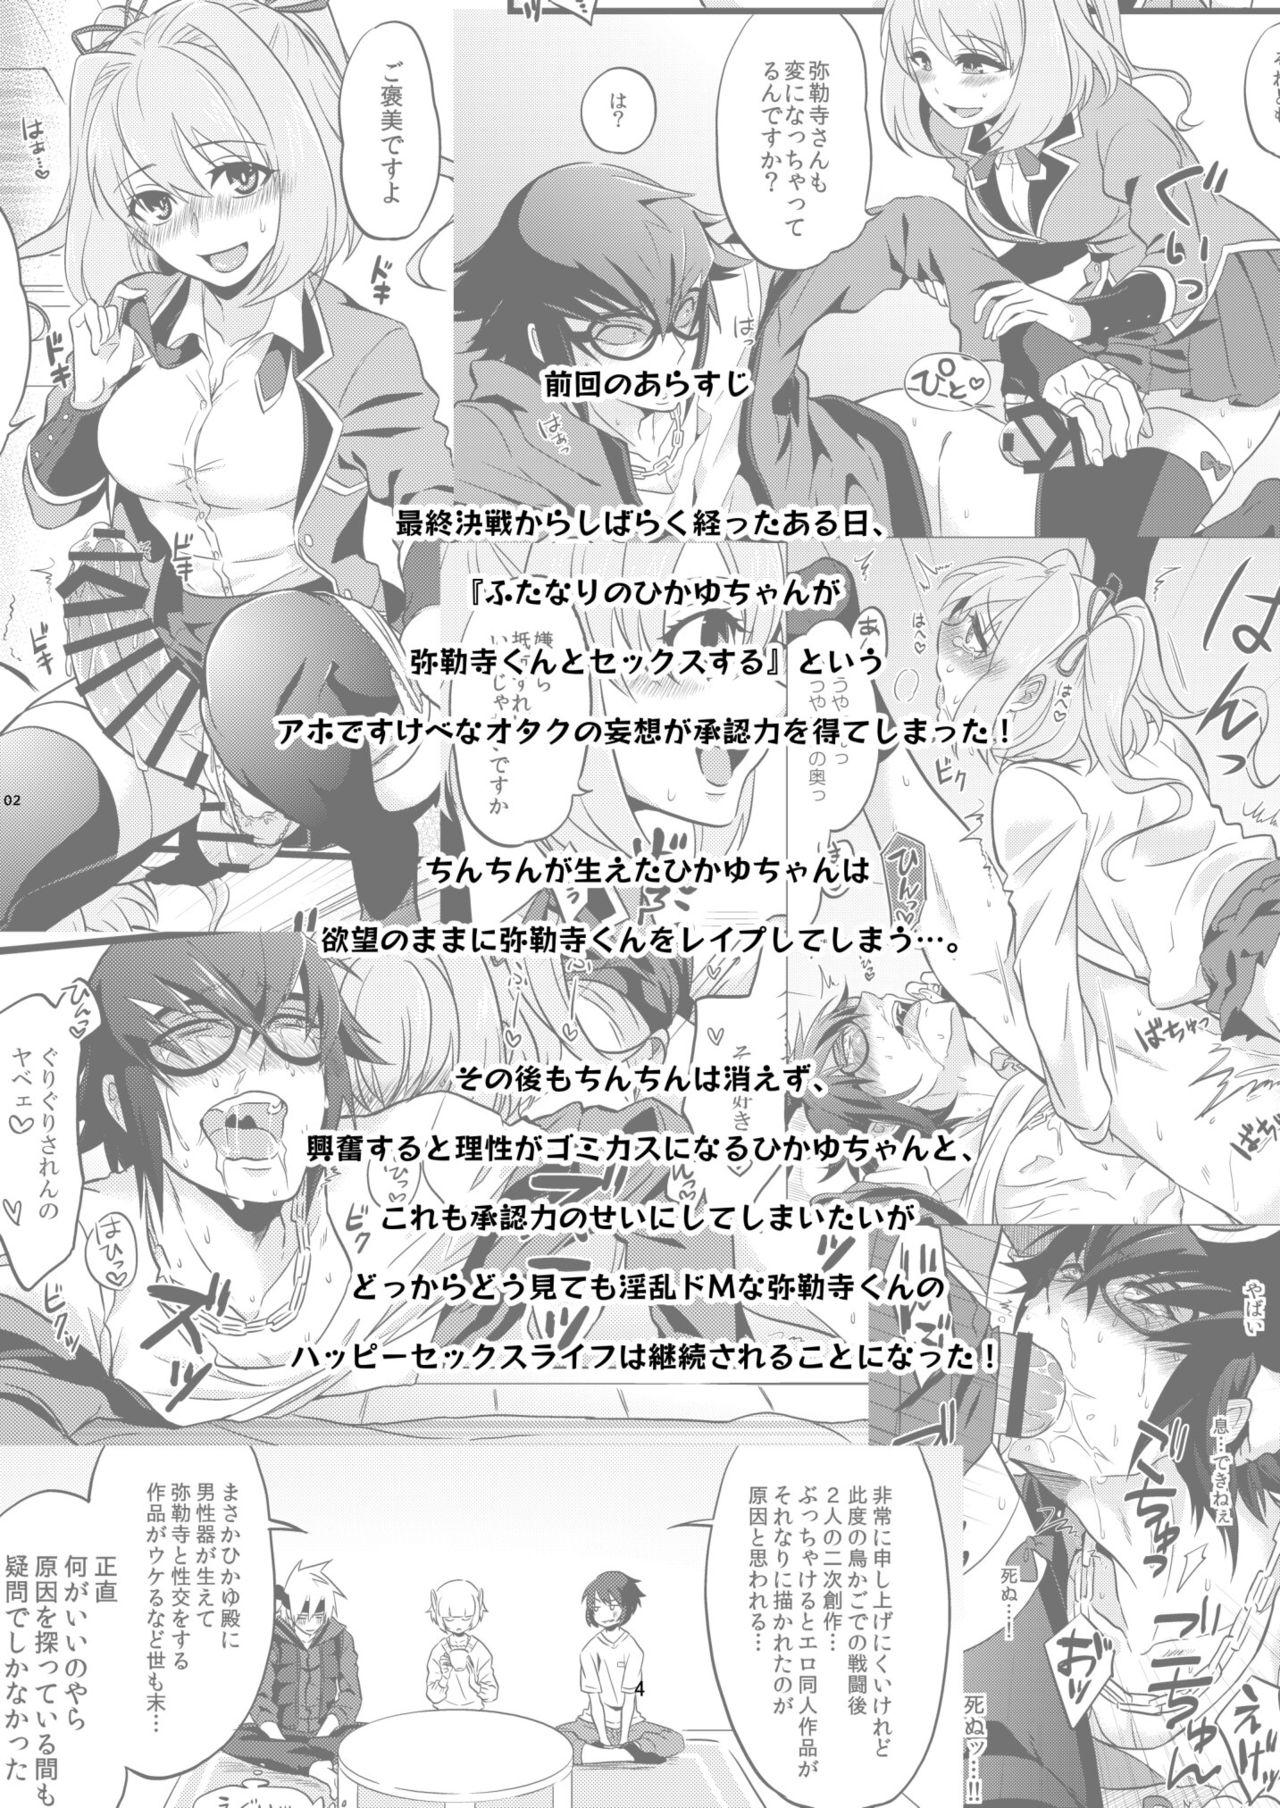 Man Shounin Itadakimashita 2 - Re creators Nylons - Page 4